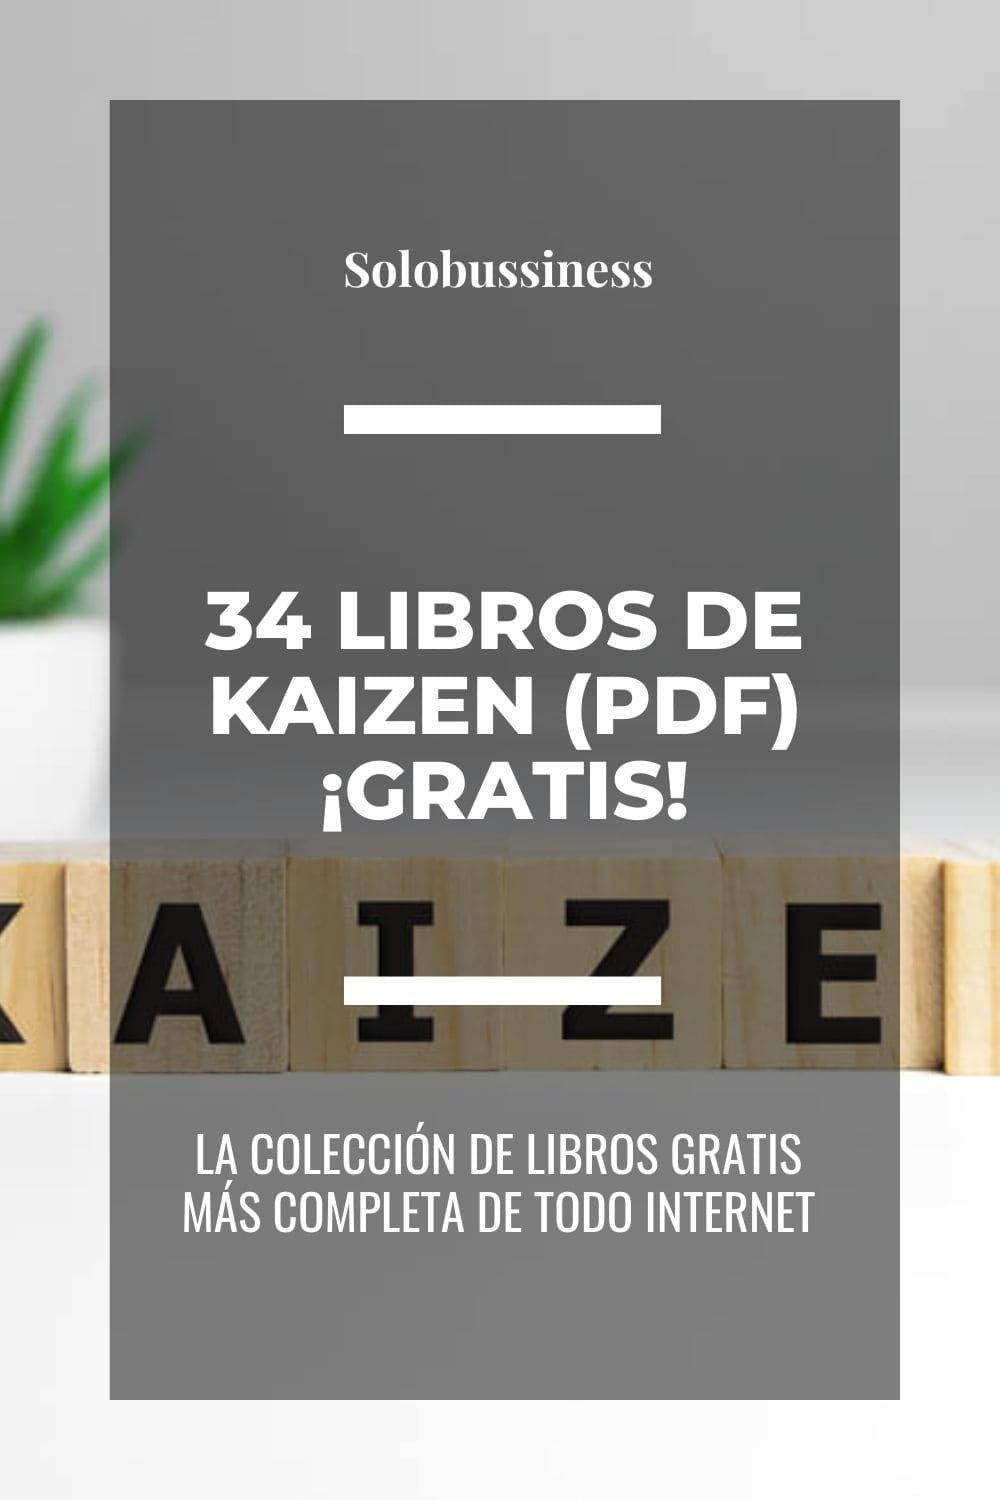 Libros de Kaizen en formato pdf